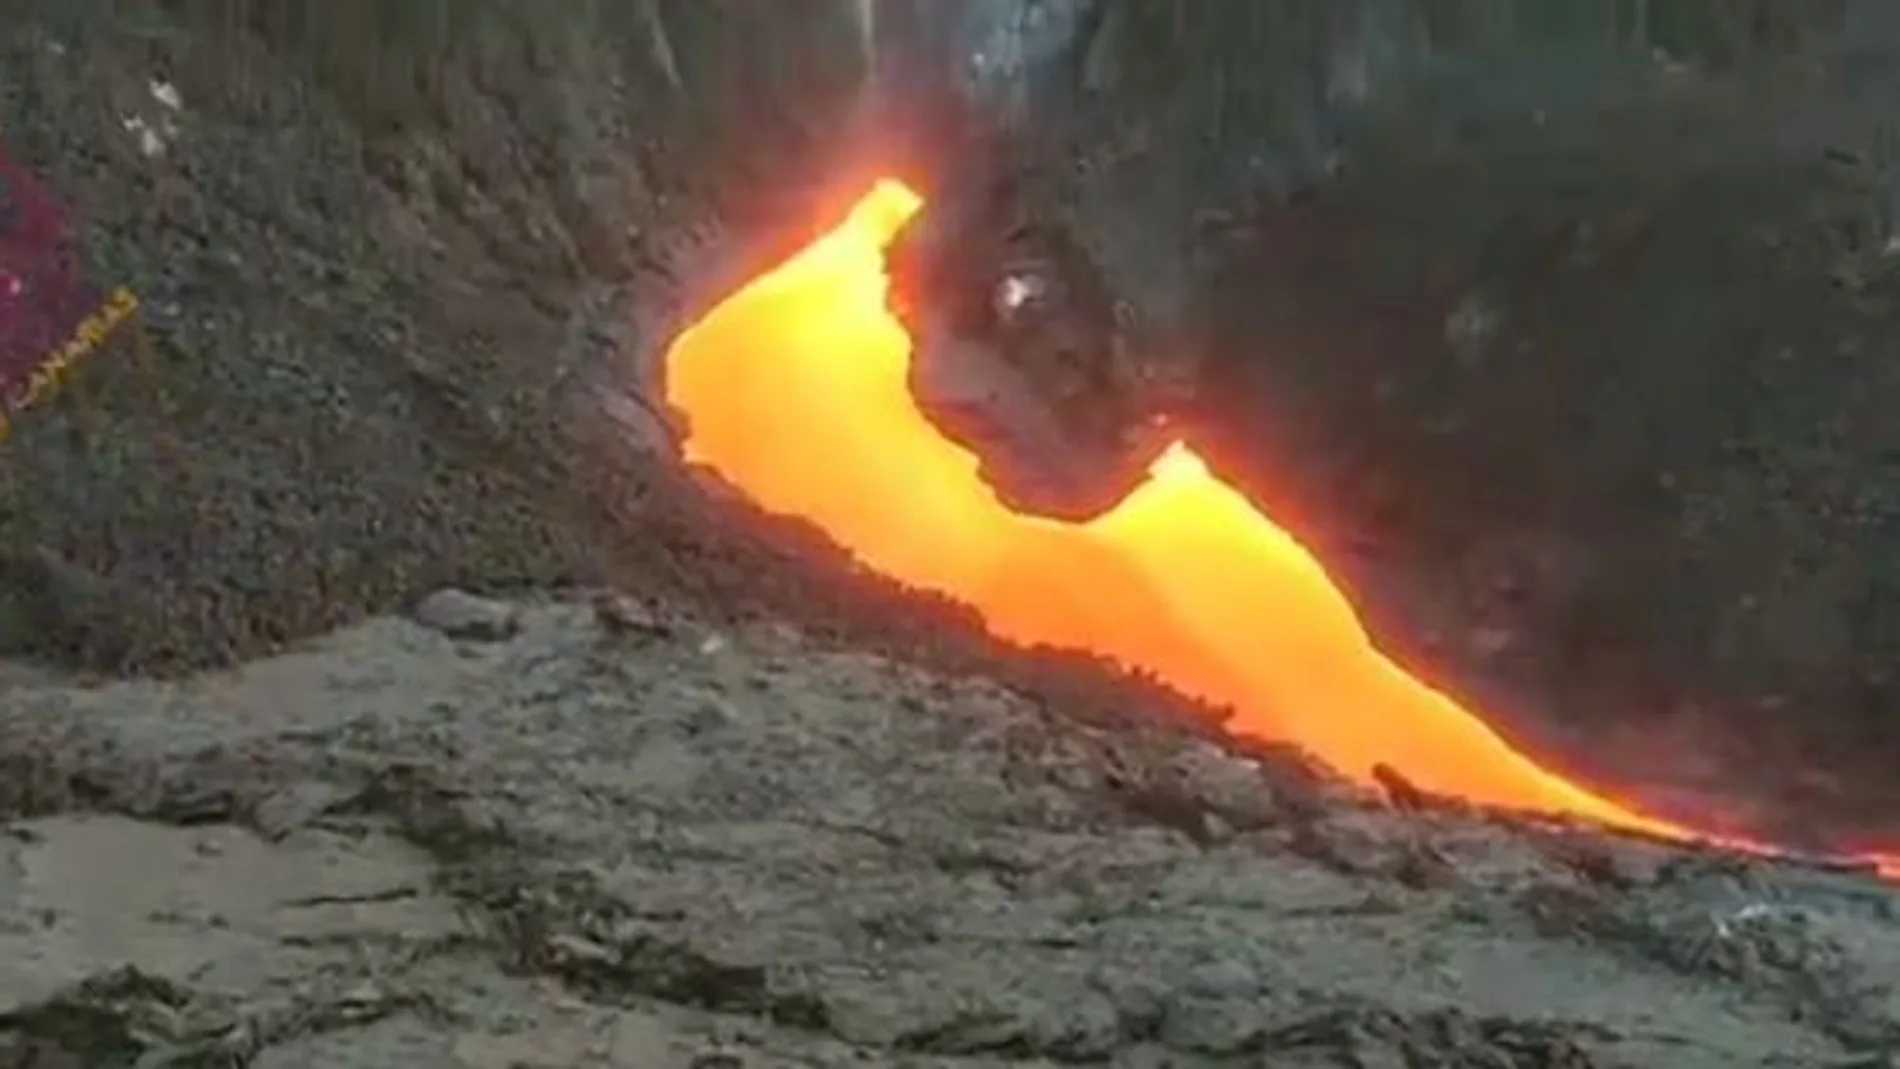 Fisura eruptiva del volcán de La Palma